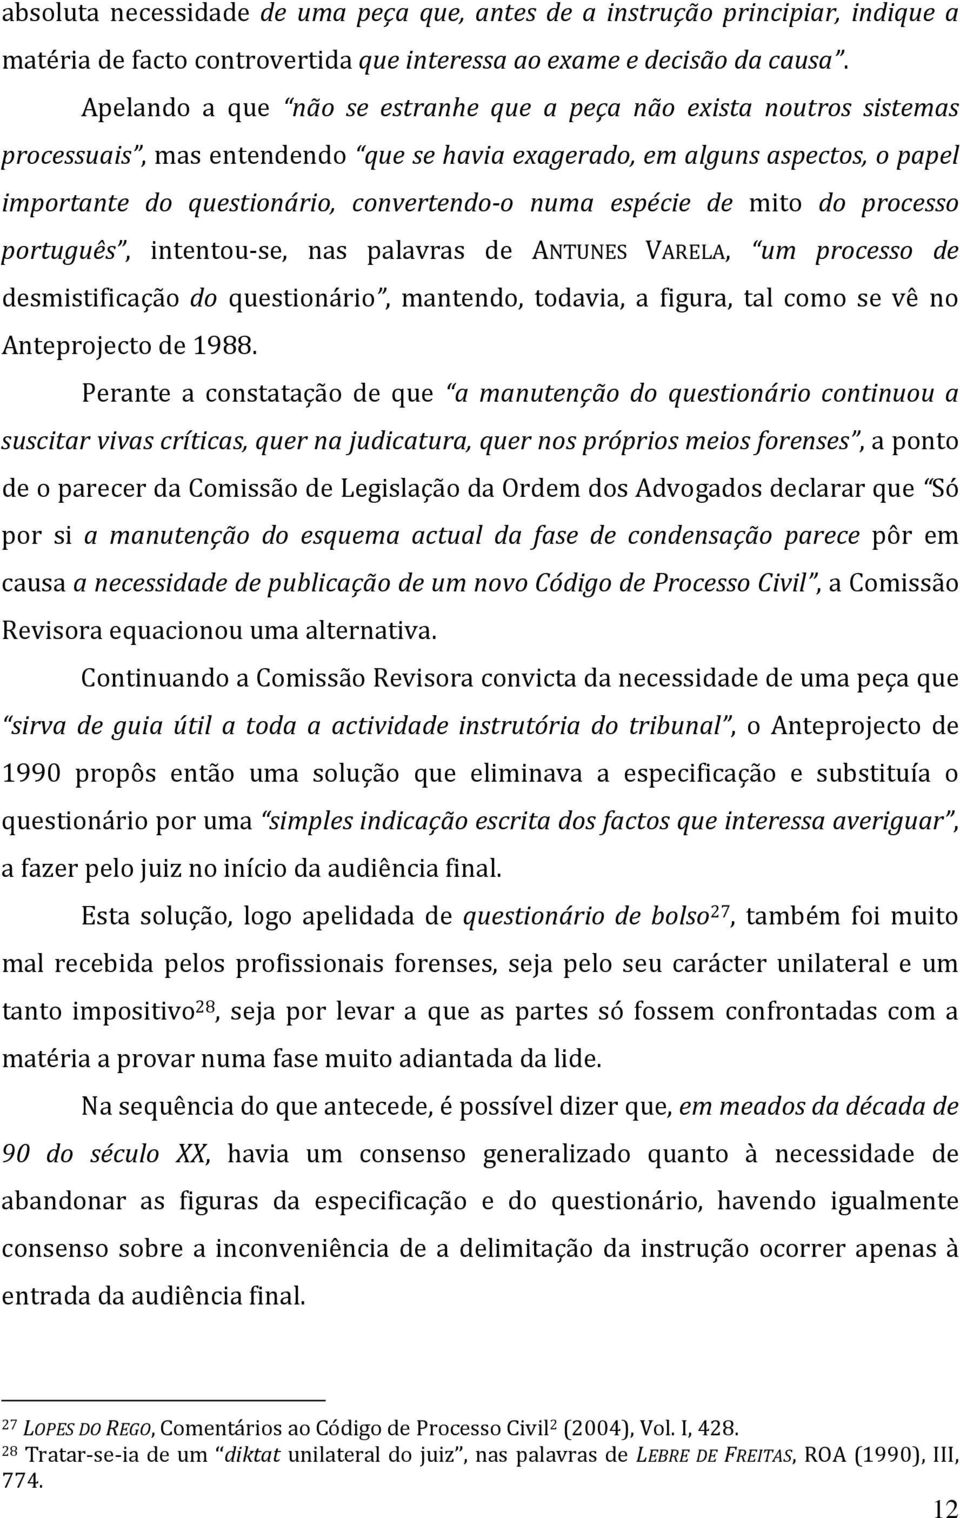 espécie de mito do processo português, intentou-se, nas palavras de ANTUNES VARELA, um processo de desmistificação do questionário, mantendo, todavia, a figura, tal como se vê no Anteprojecto de 1988.